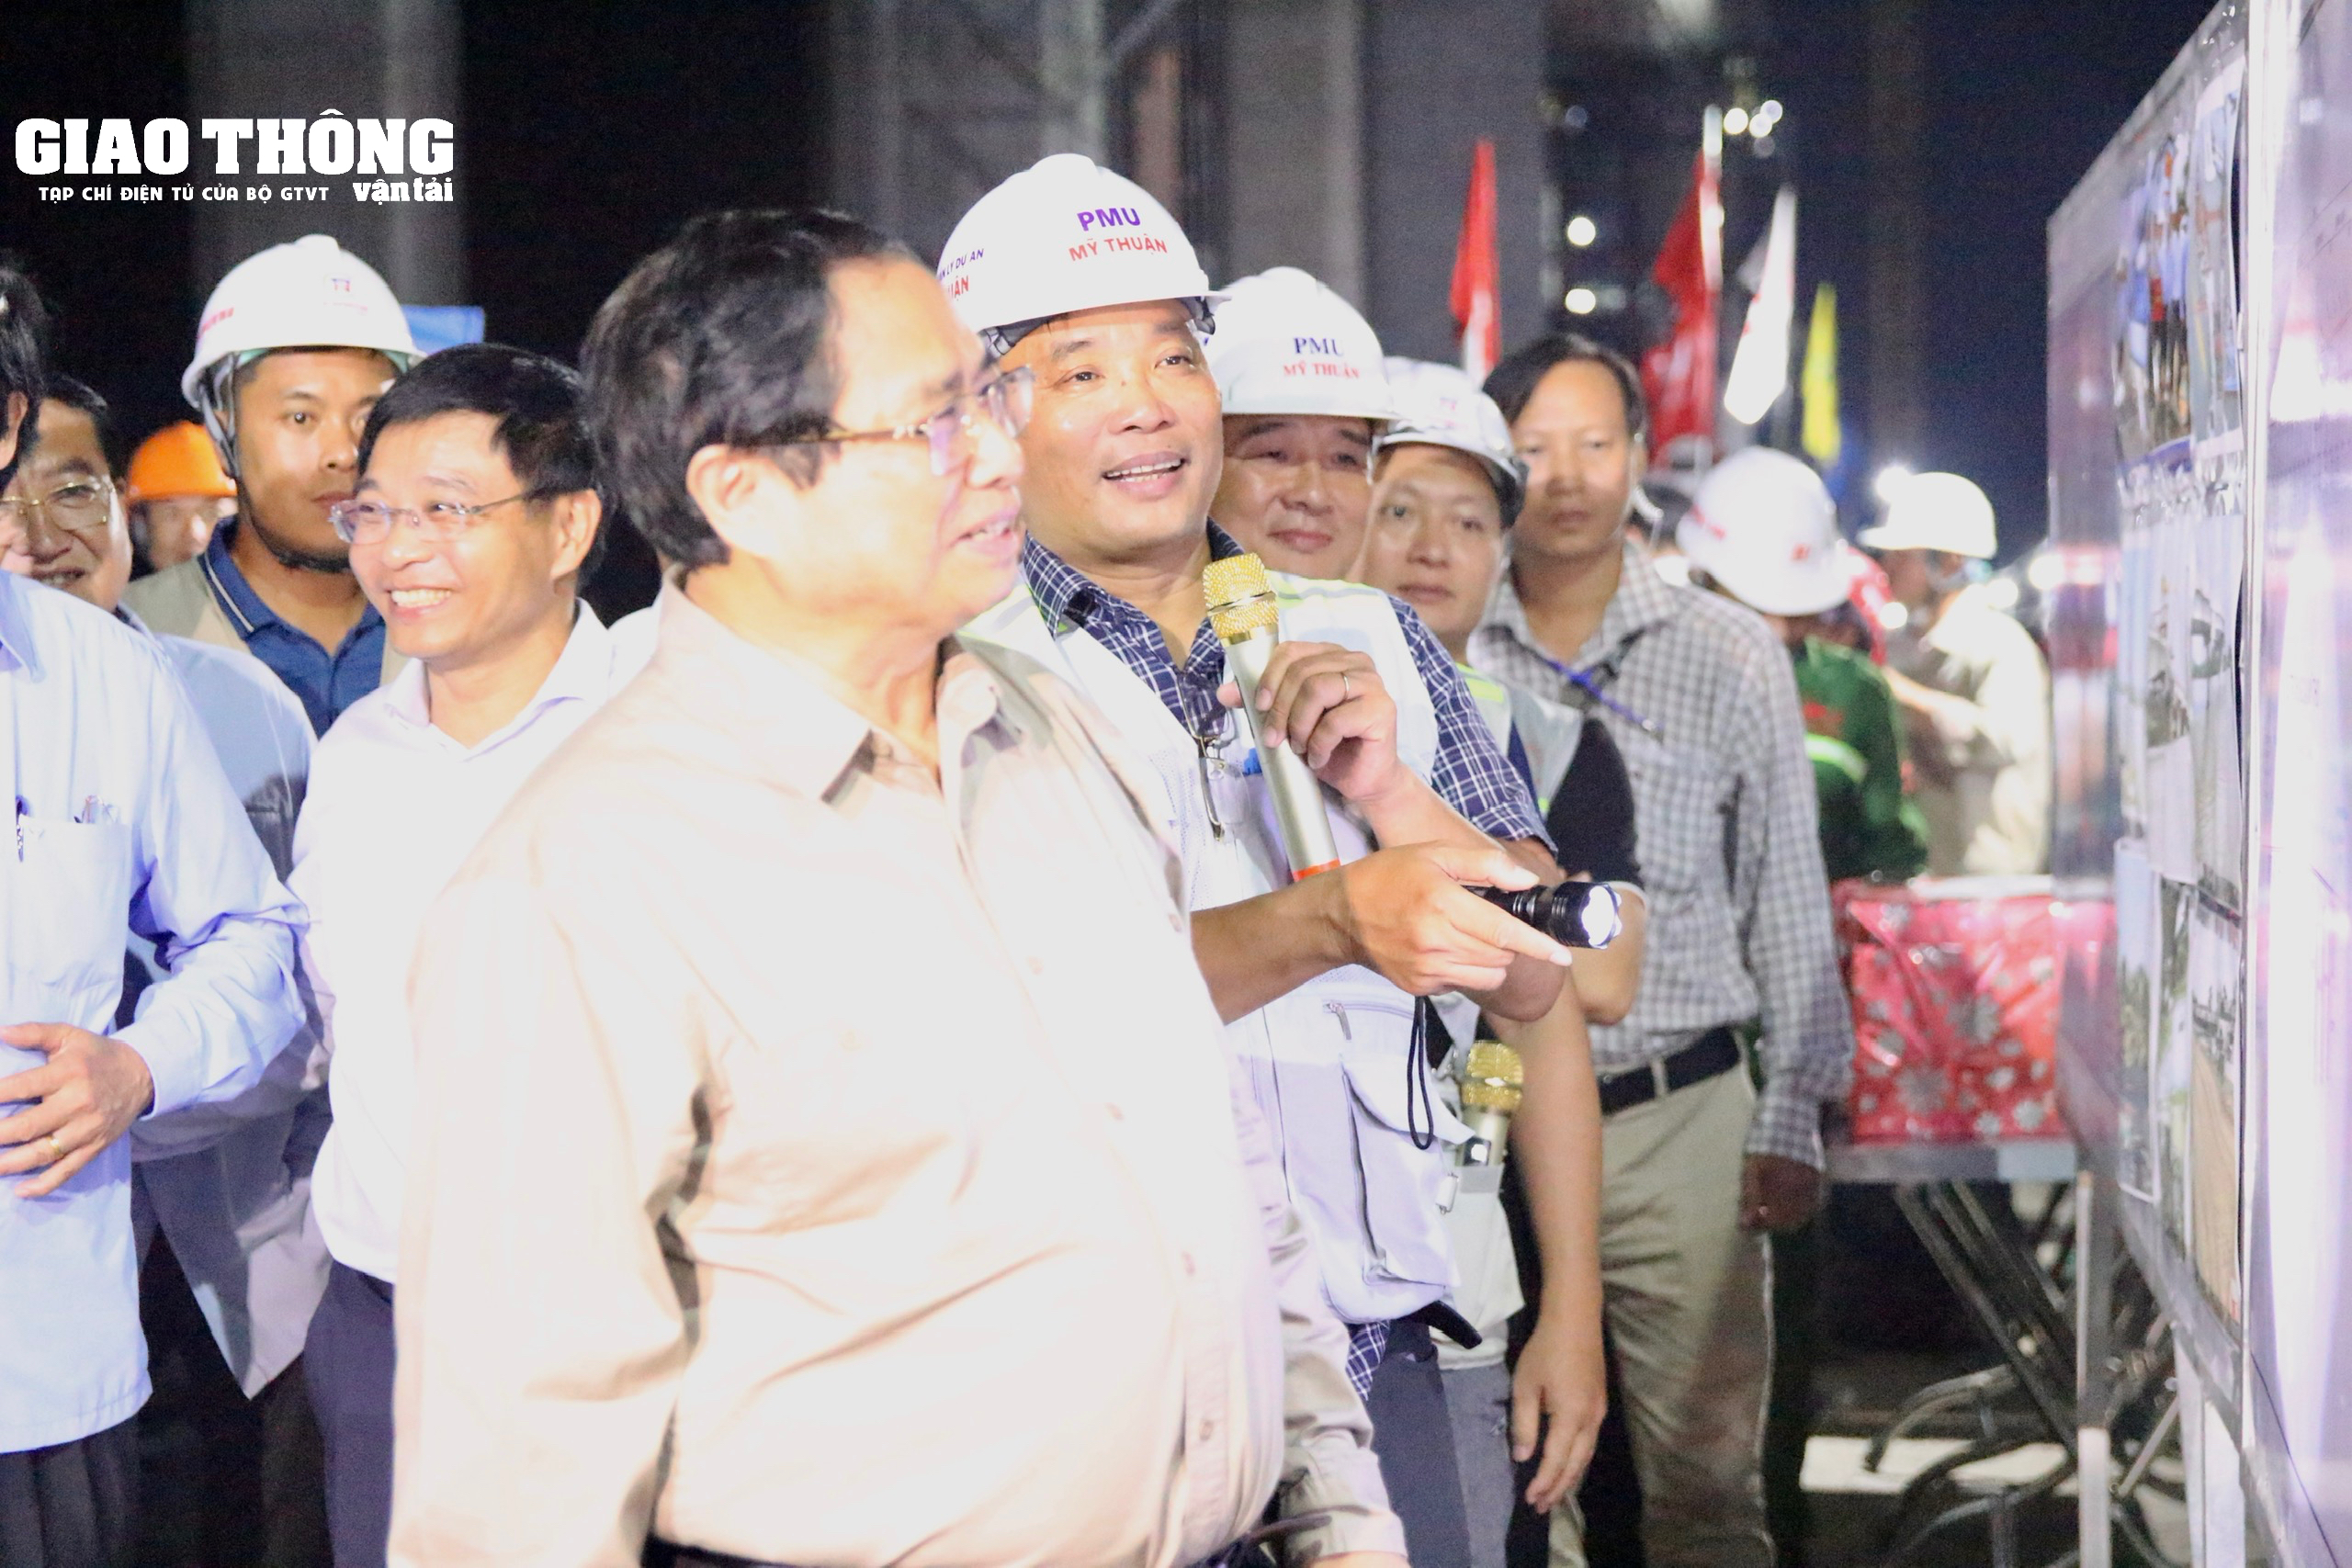 Chùm ảnh Thủ tướng Phạm Minh Chính kiểm tra cầu Rạch Miễu 2 trong đêm- Ảnh 9.